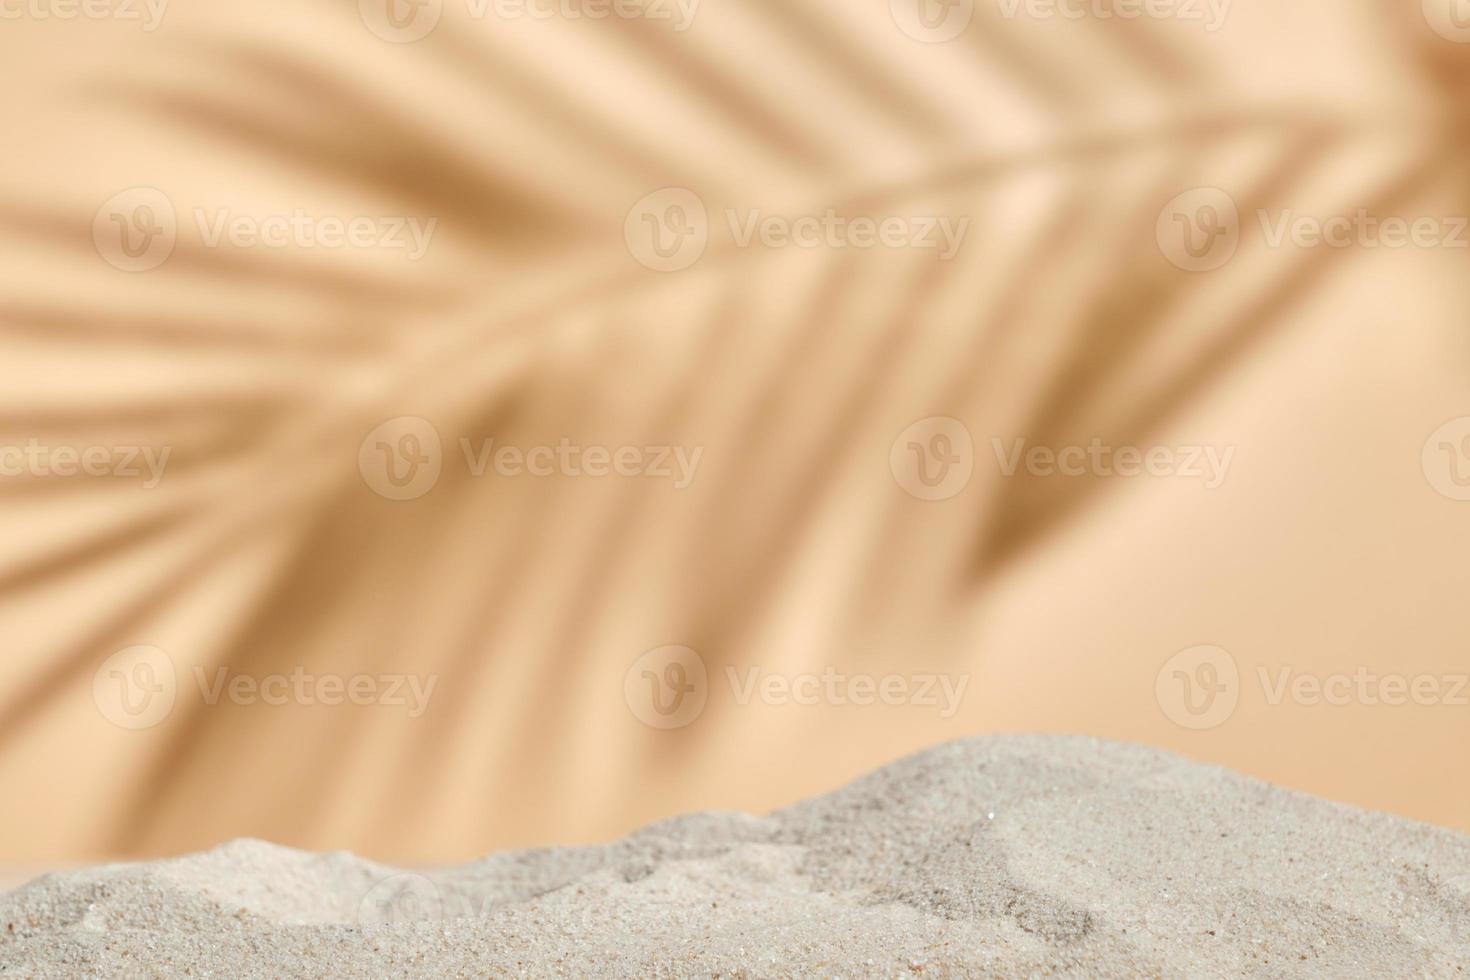 fondo natural naranja en blanco con arena y naturaleza de sombra ligera para productos cosméticos naturales. escena vacía con arena.concepto orgánico natural y de belleza para el cuidado de la piel. foto